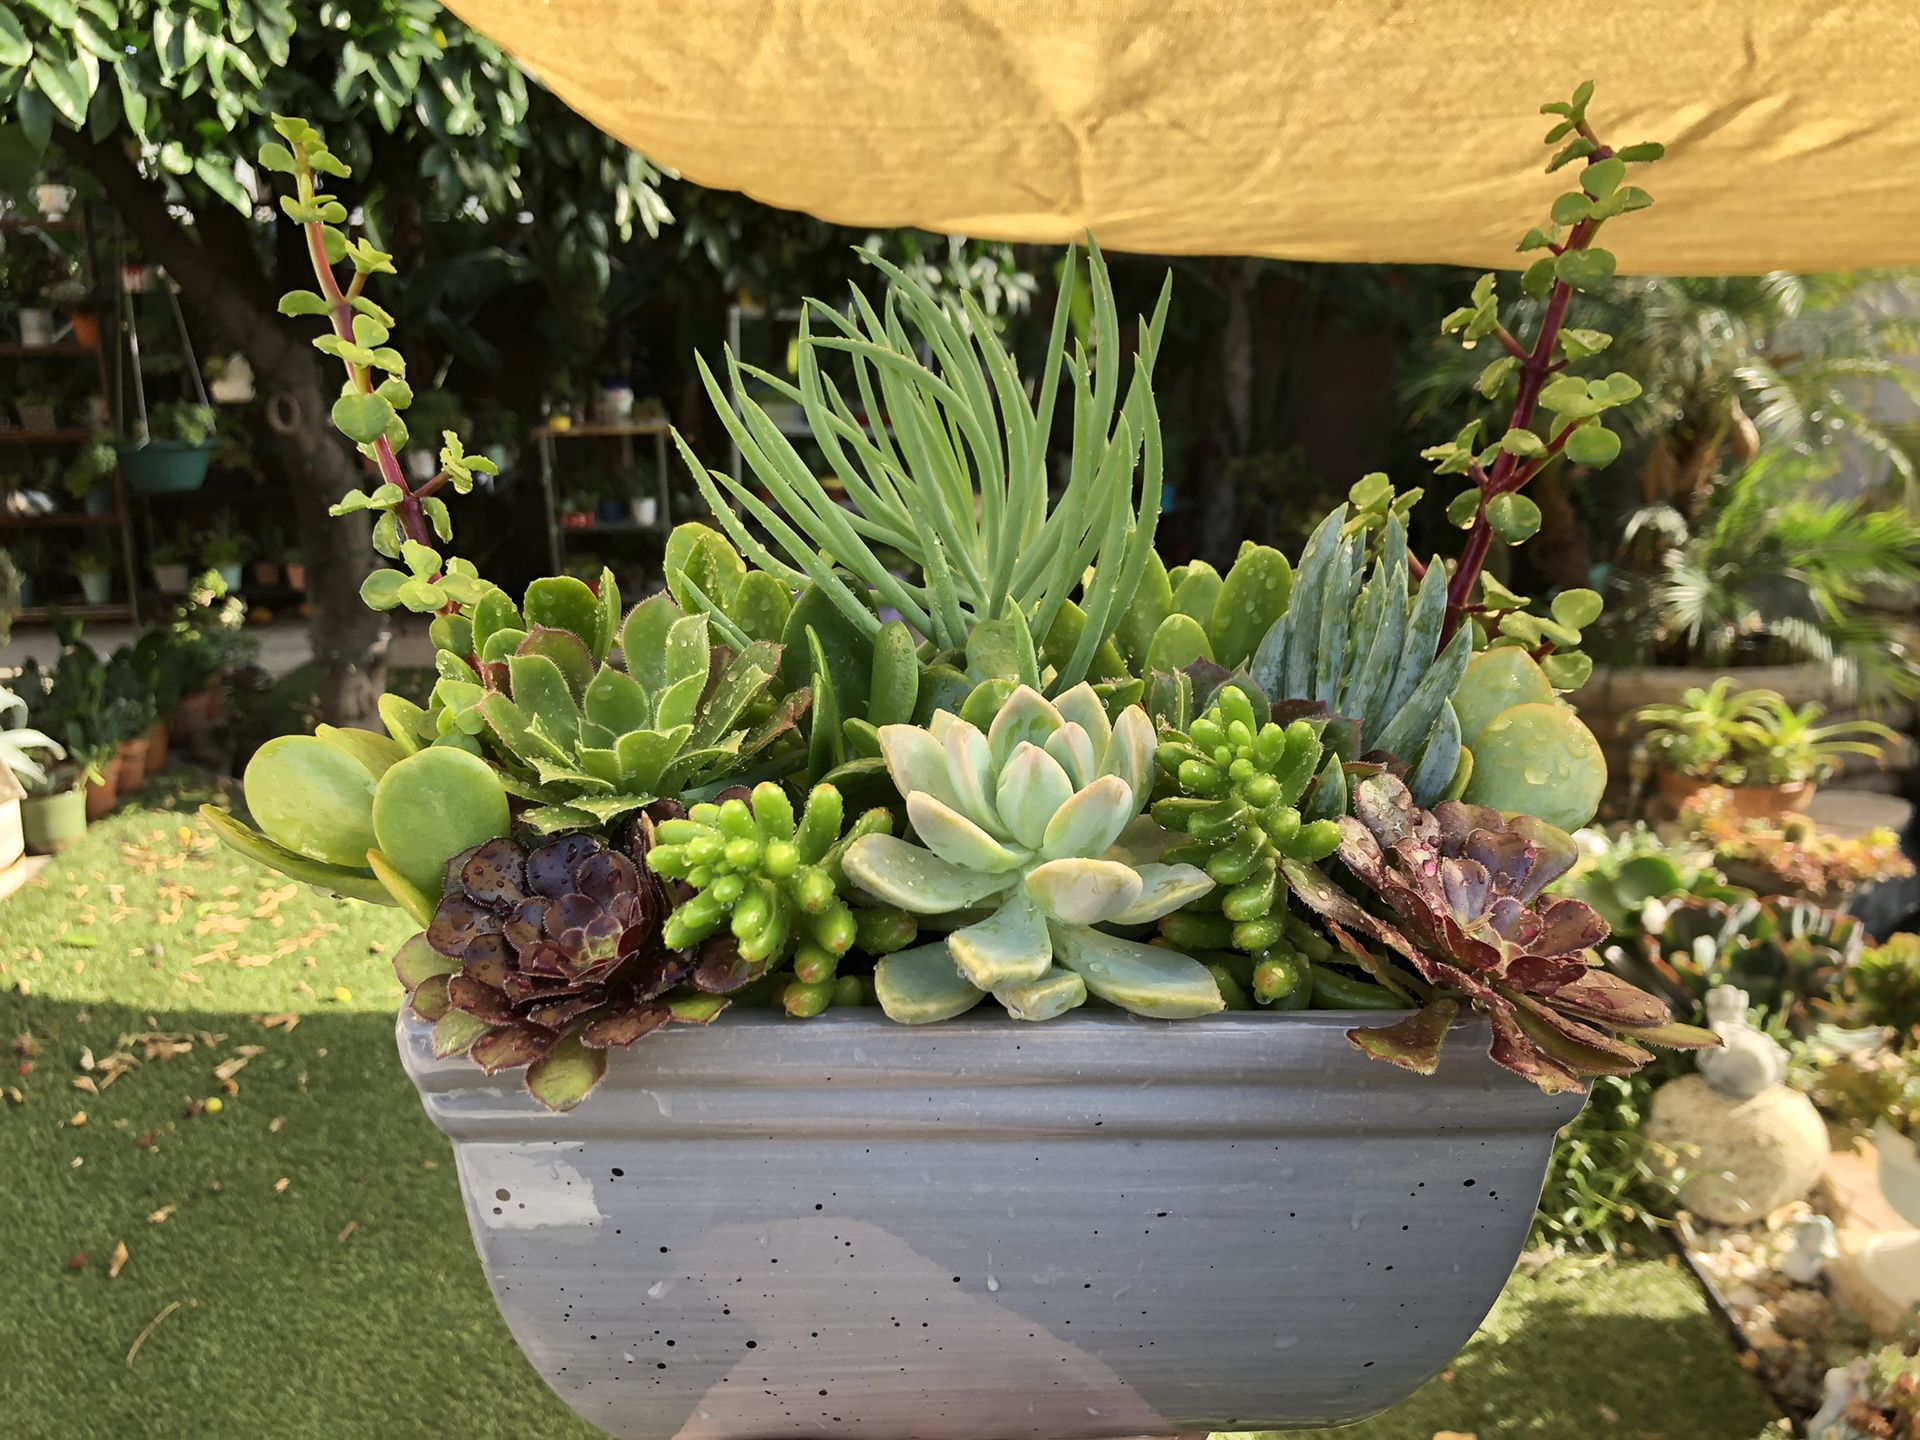 Very beautiful succulent arrangement in a beautiful ceramic pot